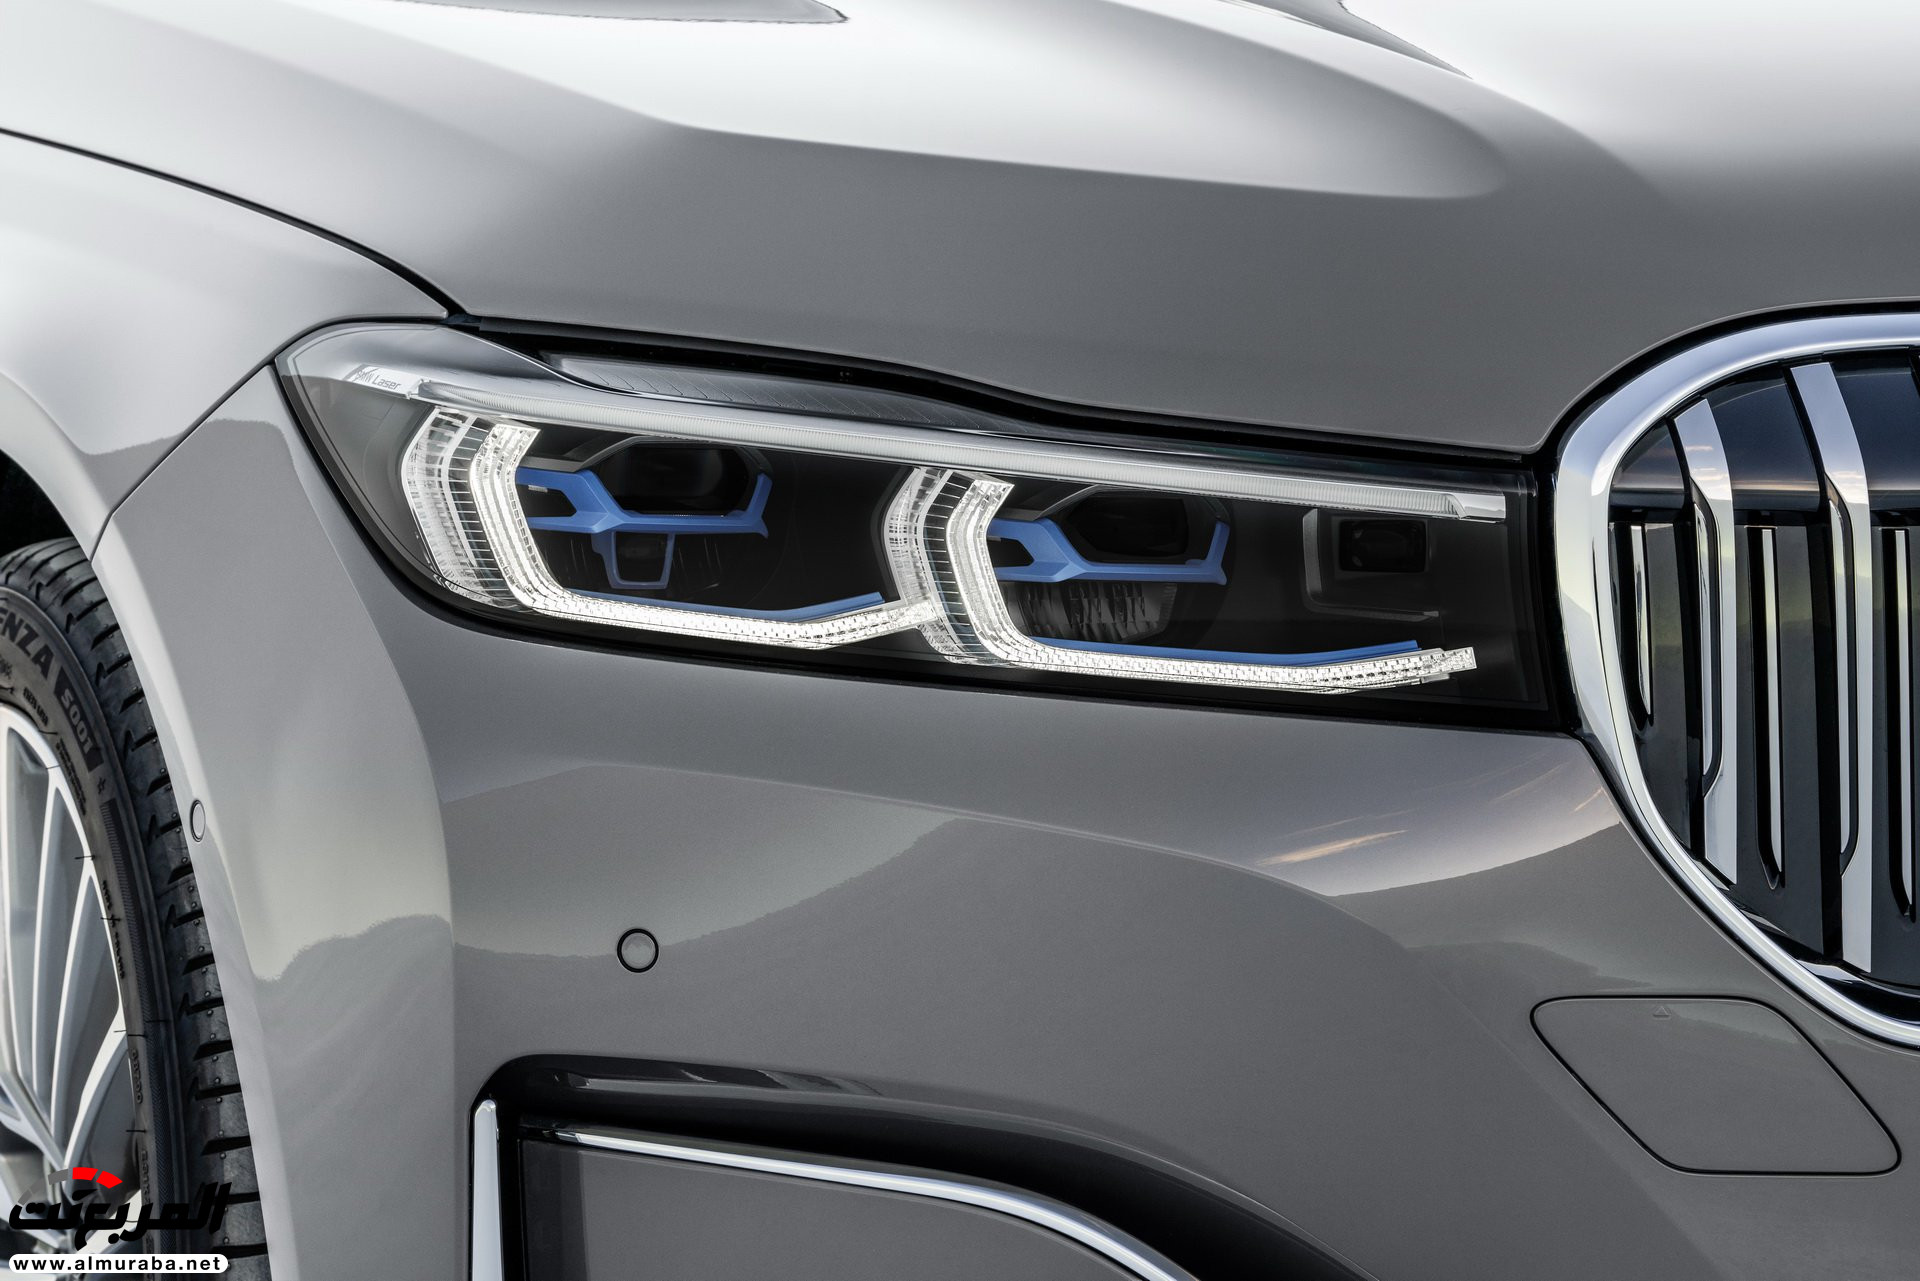 بي ام دبليو الفئة السابعة 2020 المحدثة تكشف نفسها رسمياً "صور ومواصفات" BMW 7 Series 31